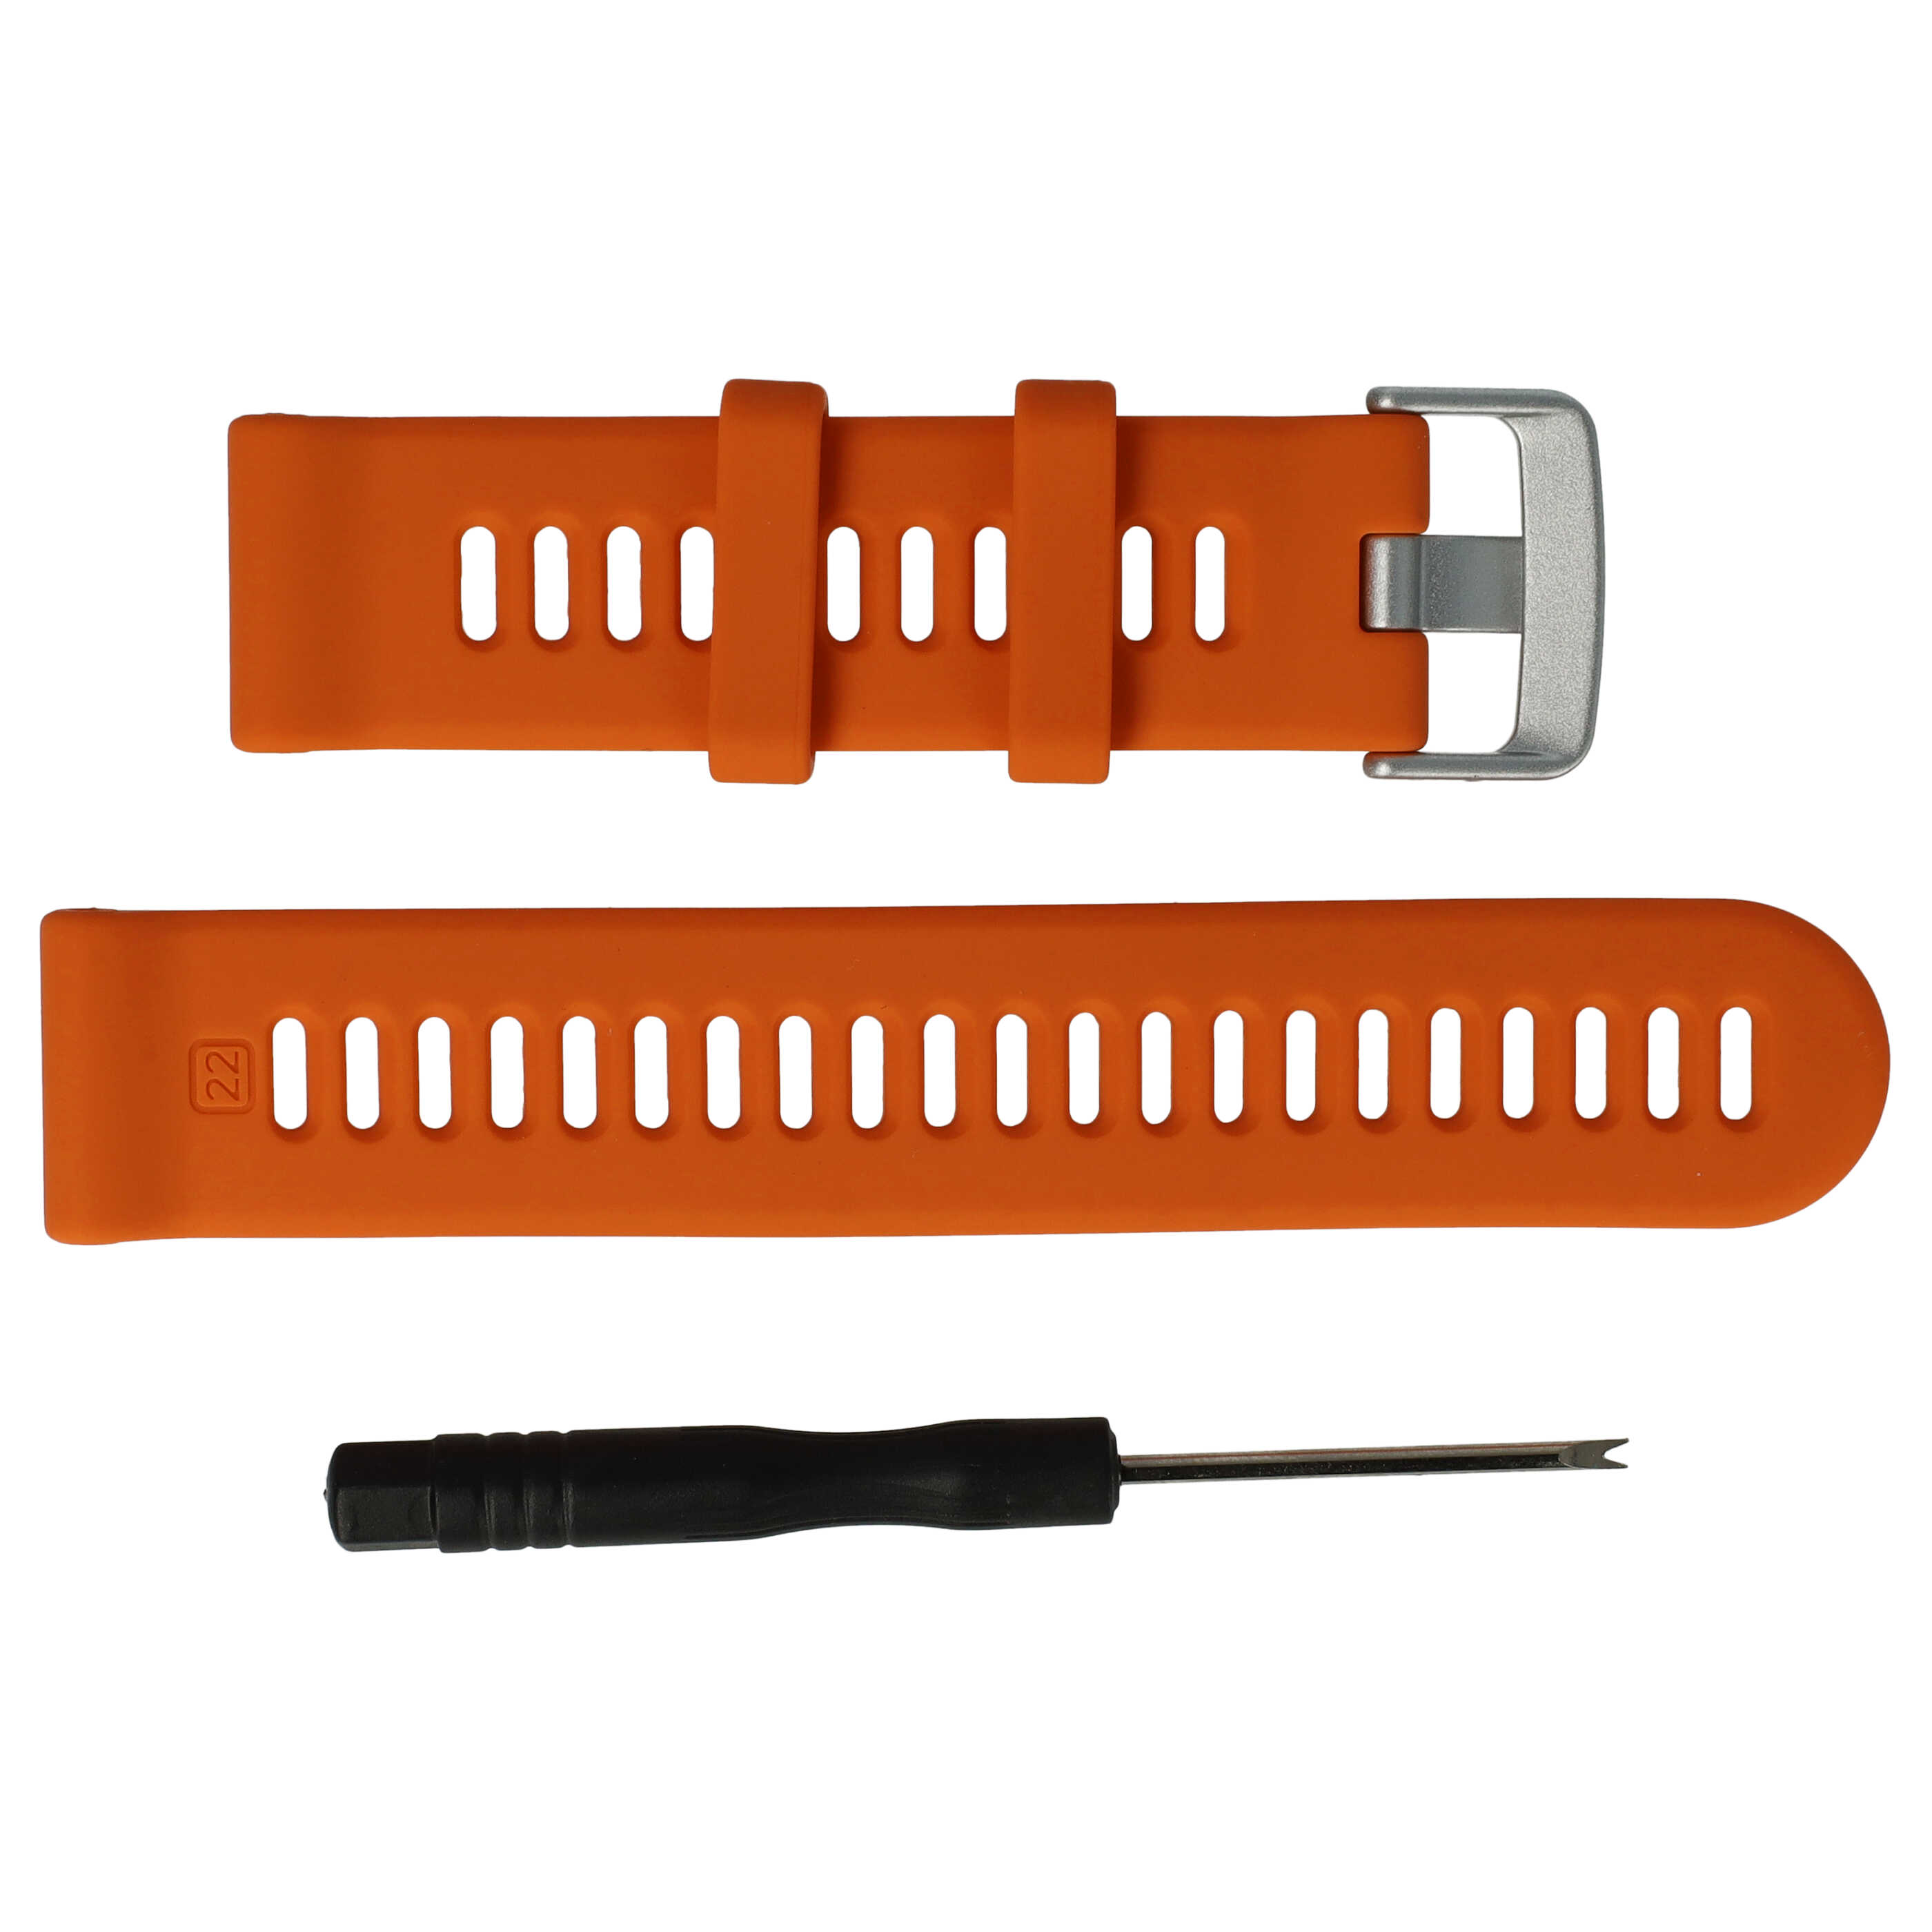 Bracelet pour montre intelligente Garmin Forerunner - 9 + 12,2 cm de long, 22mm de large, silicone, orange